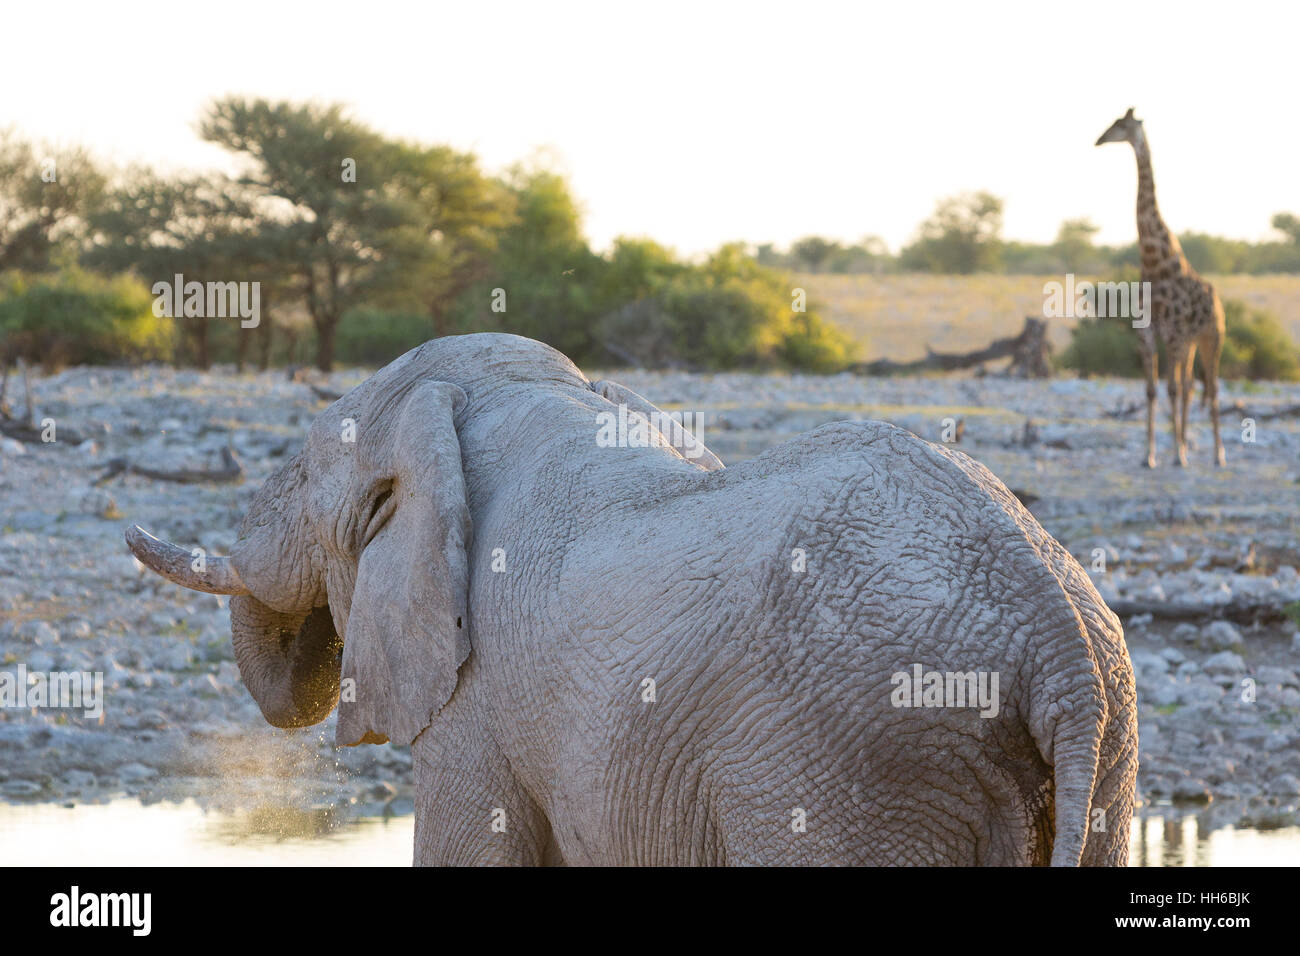 Parc National d'Etosha, Namibie. L'éléphant africain (Loxodonta africana) de boire. Girafe en arrière-plan. Banque D'Images